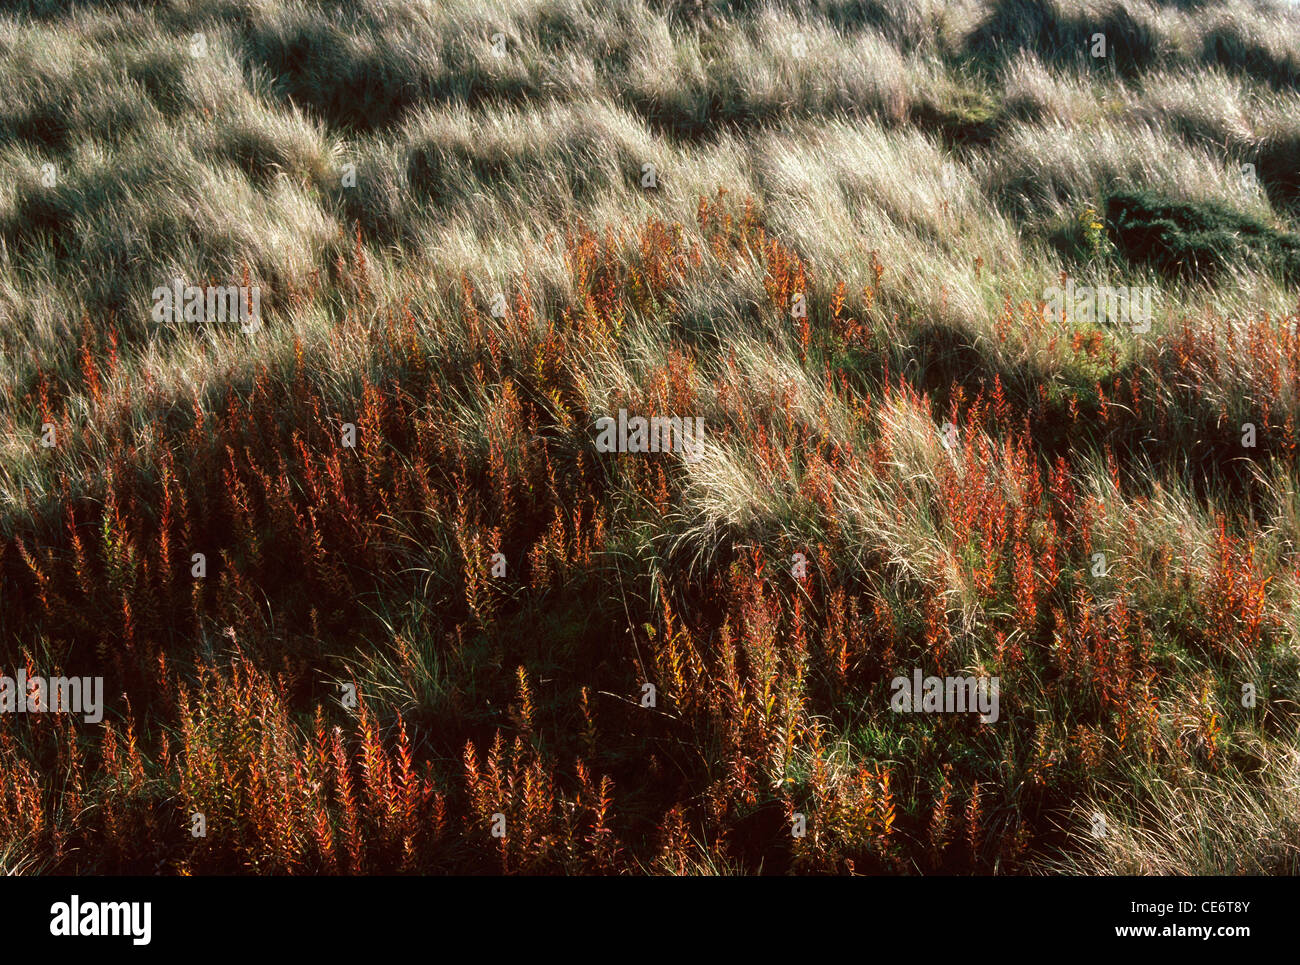 AMA 87913: rote Trockenrasen, die sich im Wind wiegen Landschaft Schottland Vereinigtes Königreich England UK Stockfoto